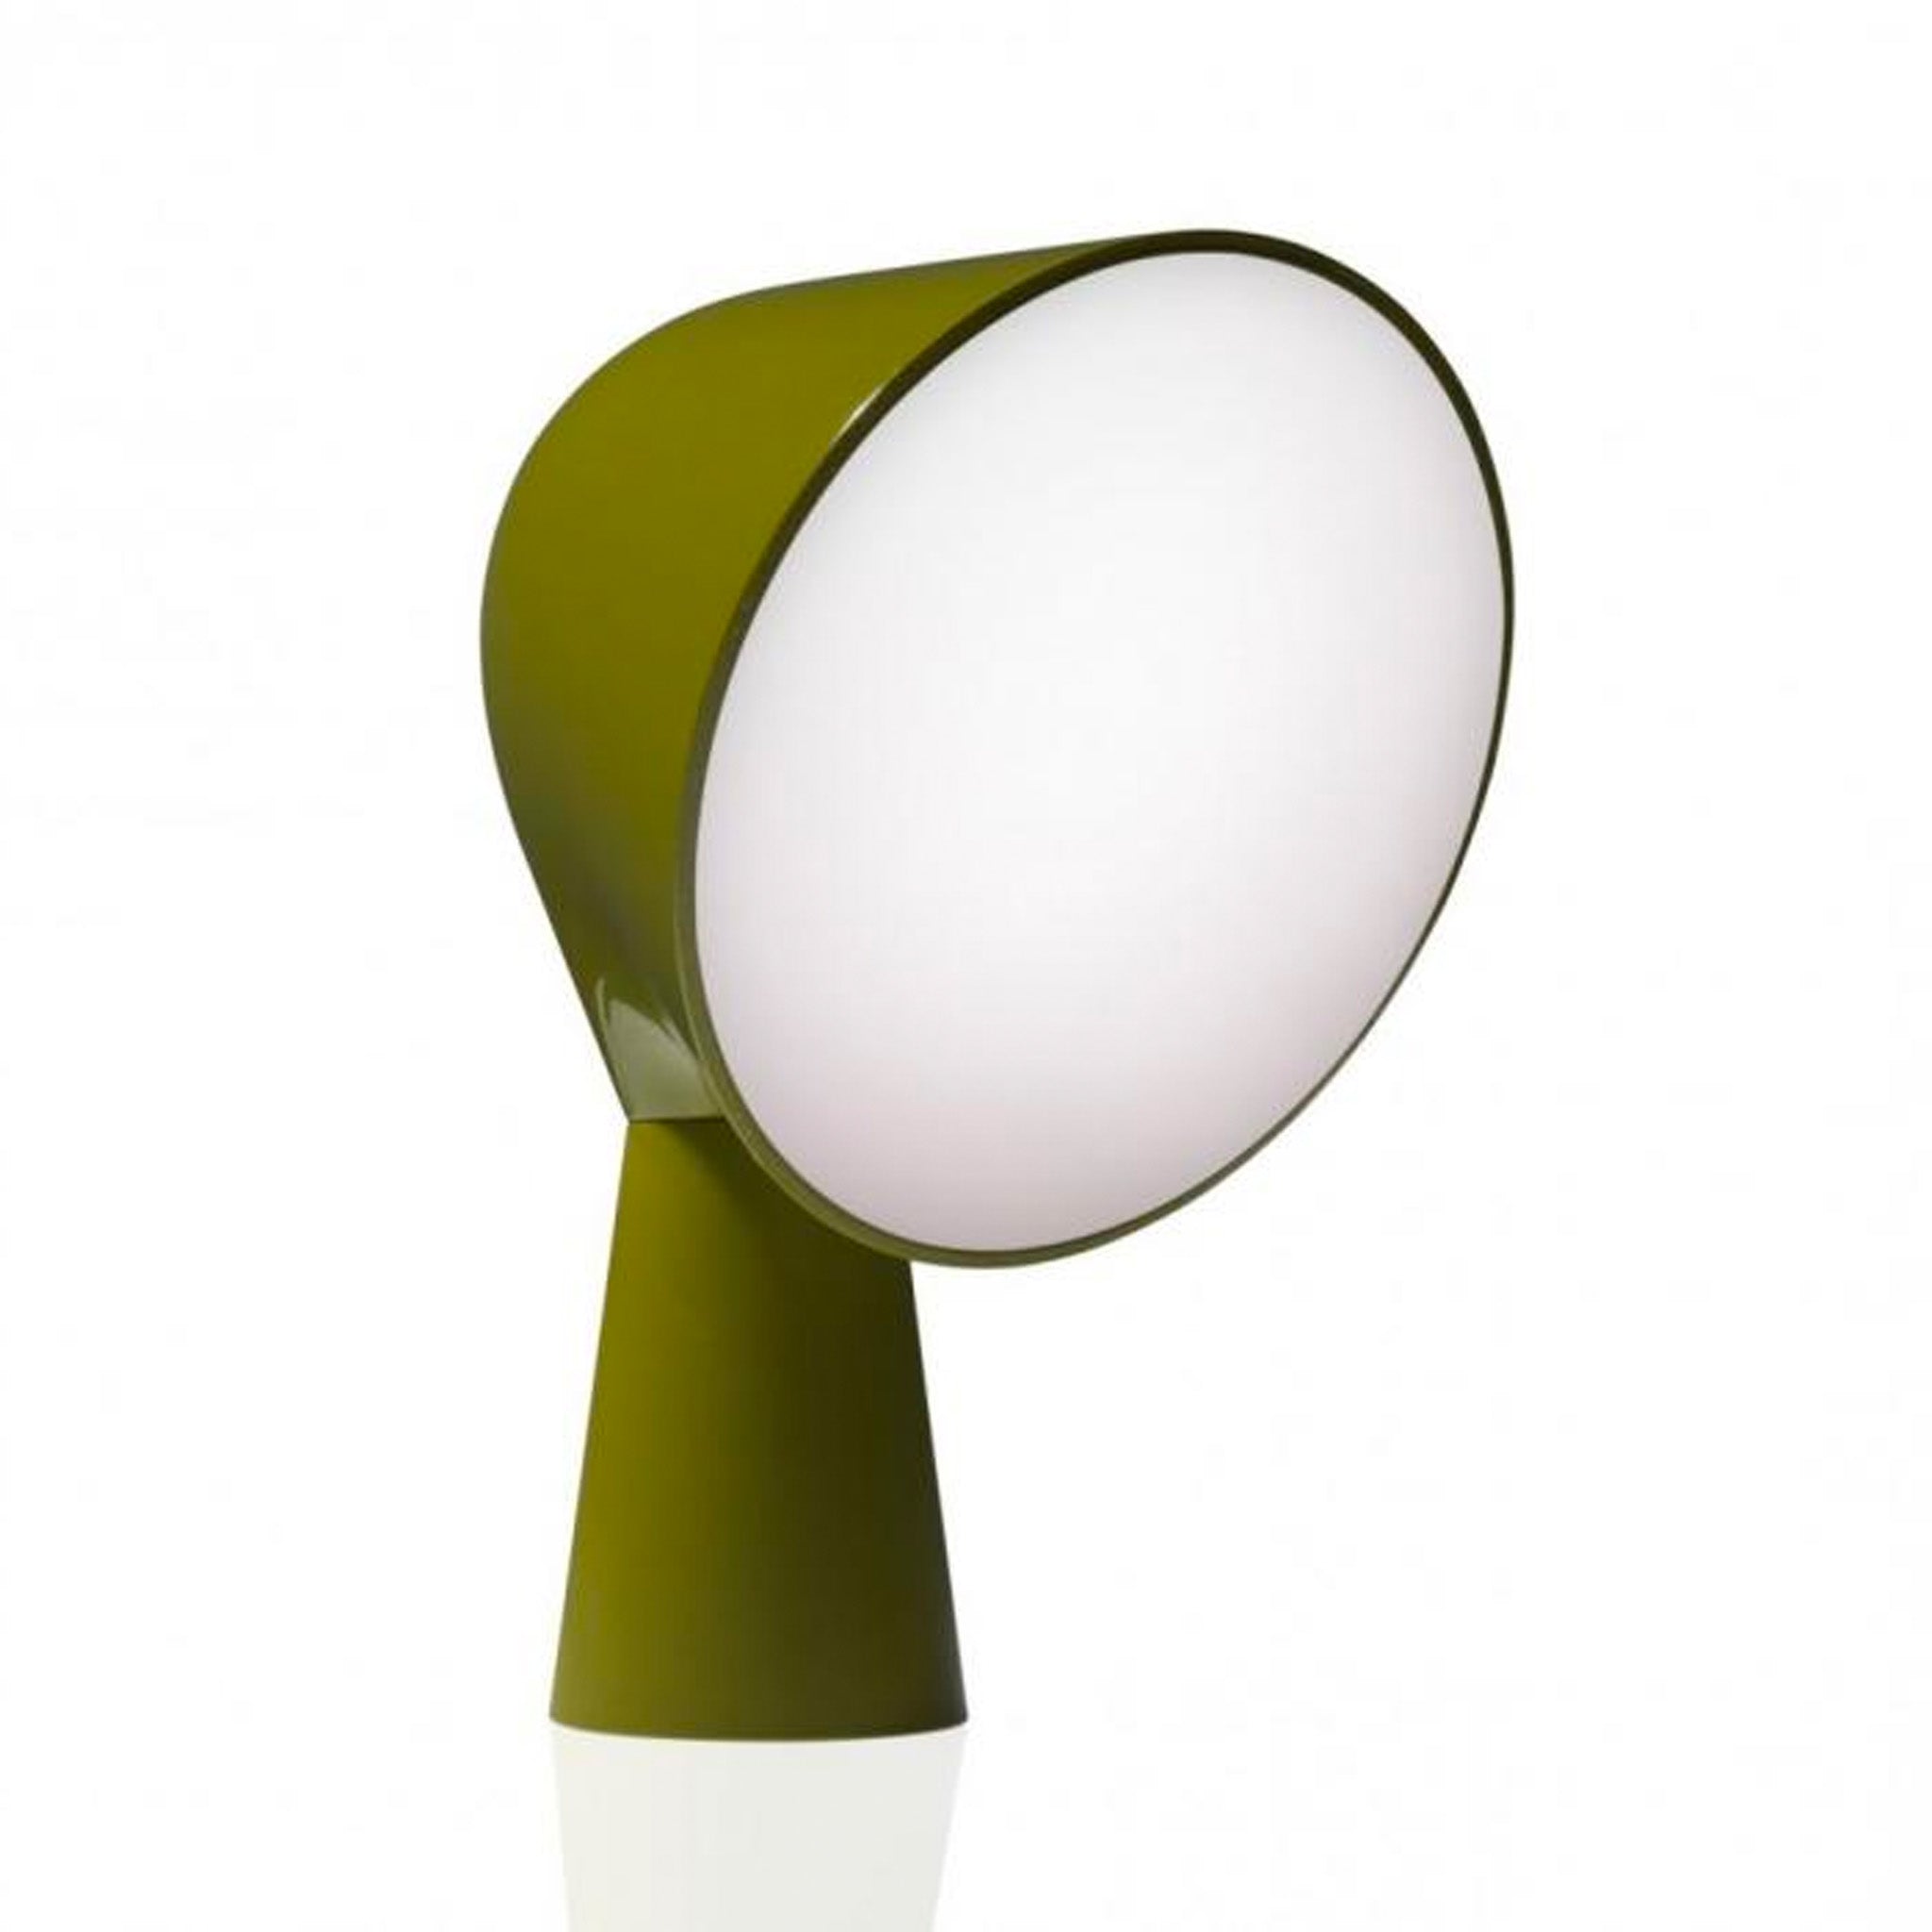 Clearance Binic Table Lamp / Green by Foscarini